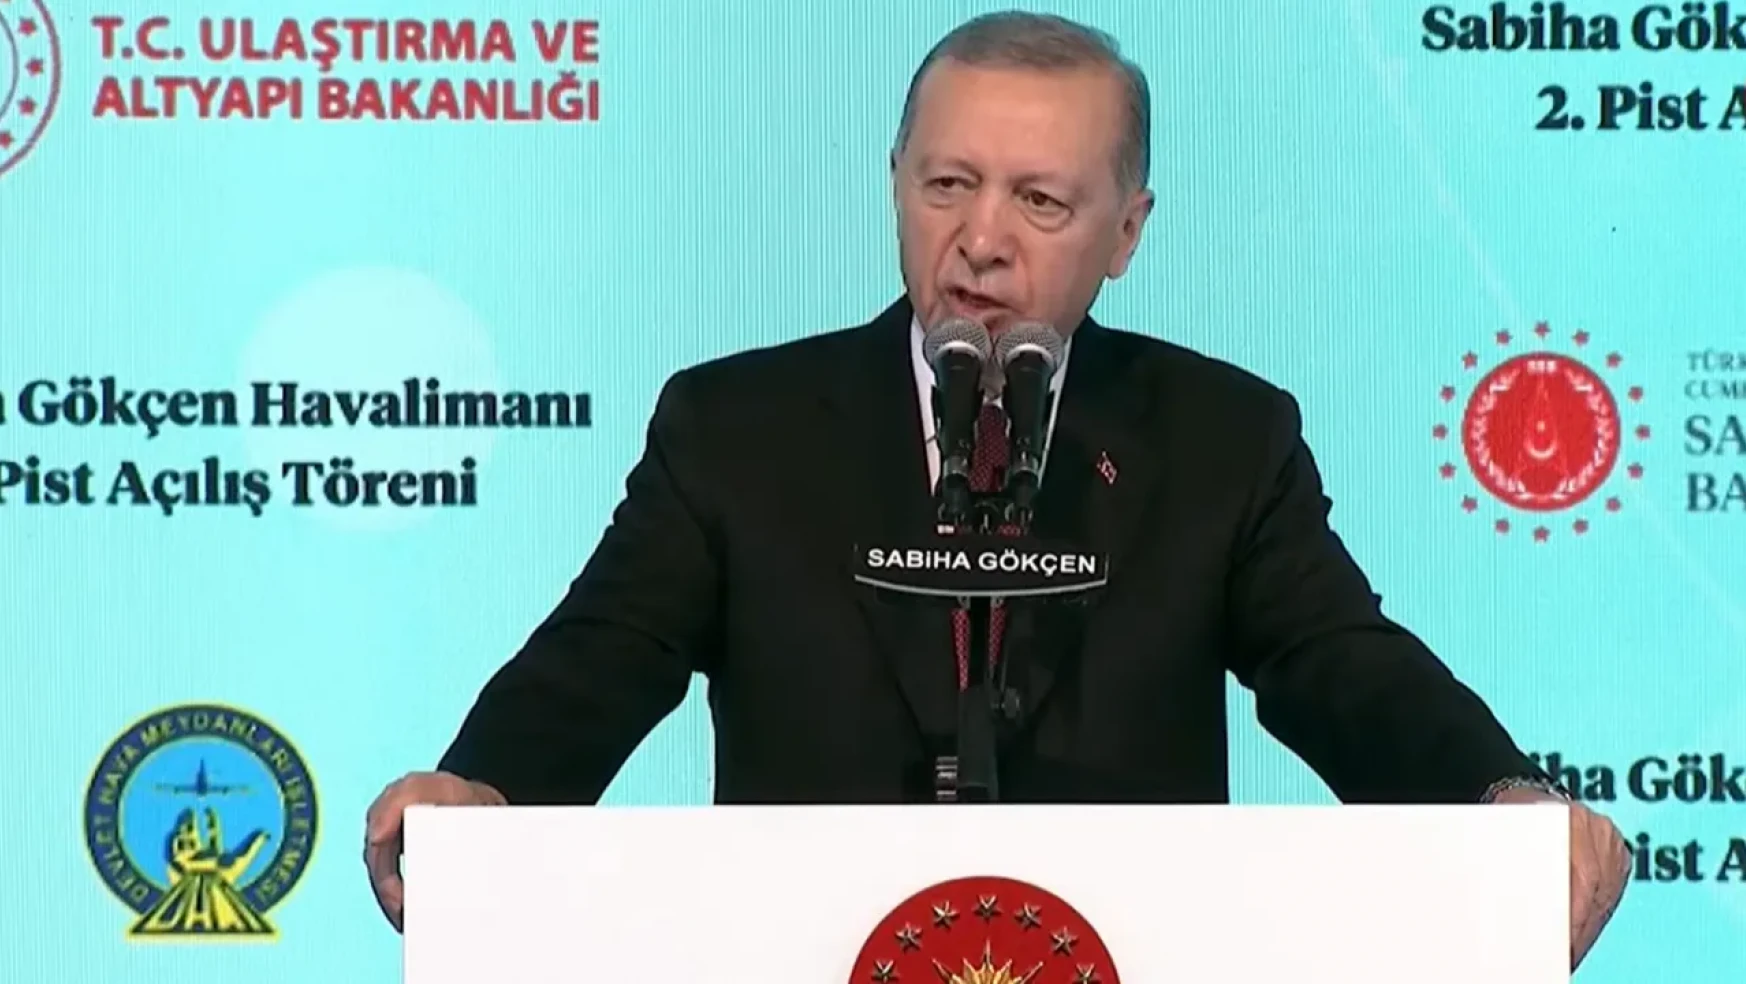 Sabiha Gökçen Havalimanı 2.Pisti açılışında konuşan Cumhurbaşkanı Erdoğan,